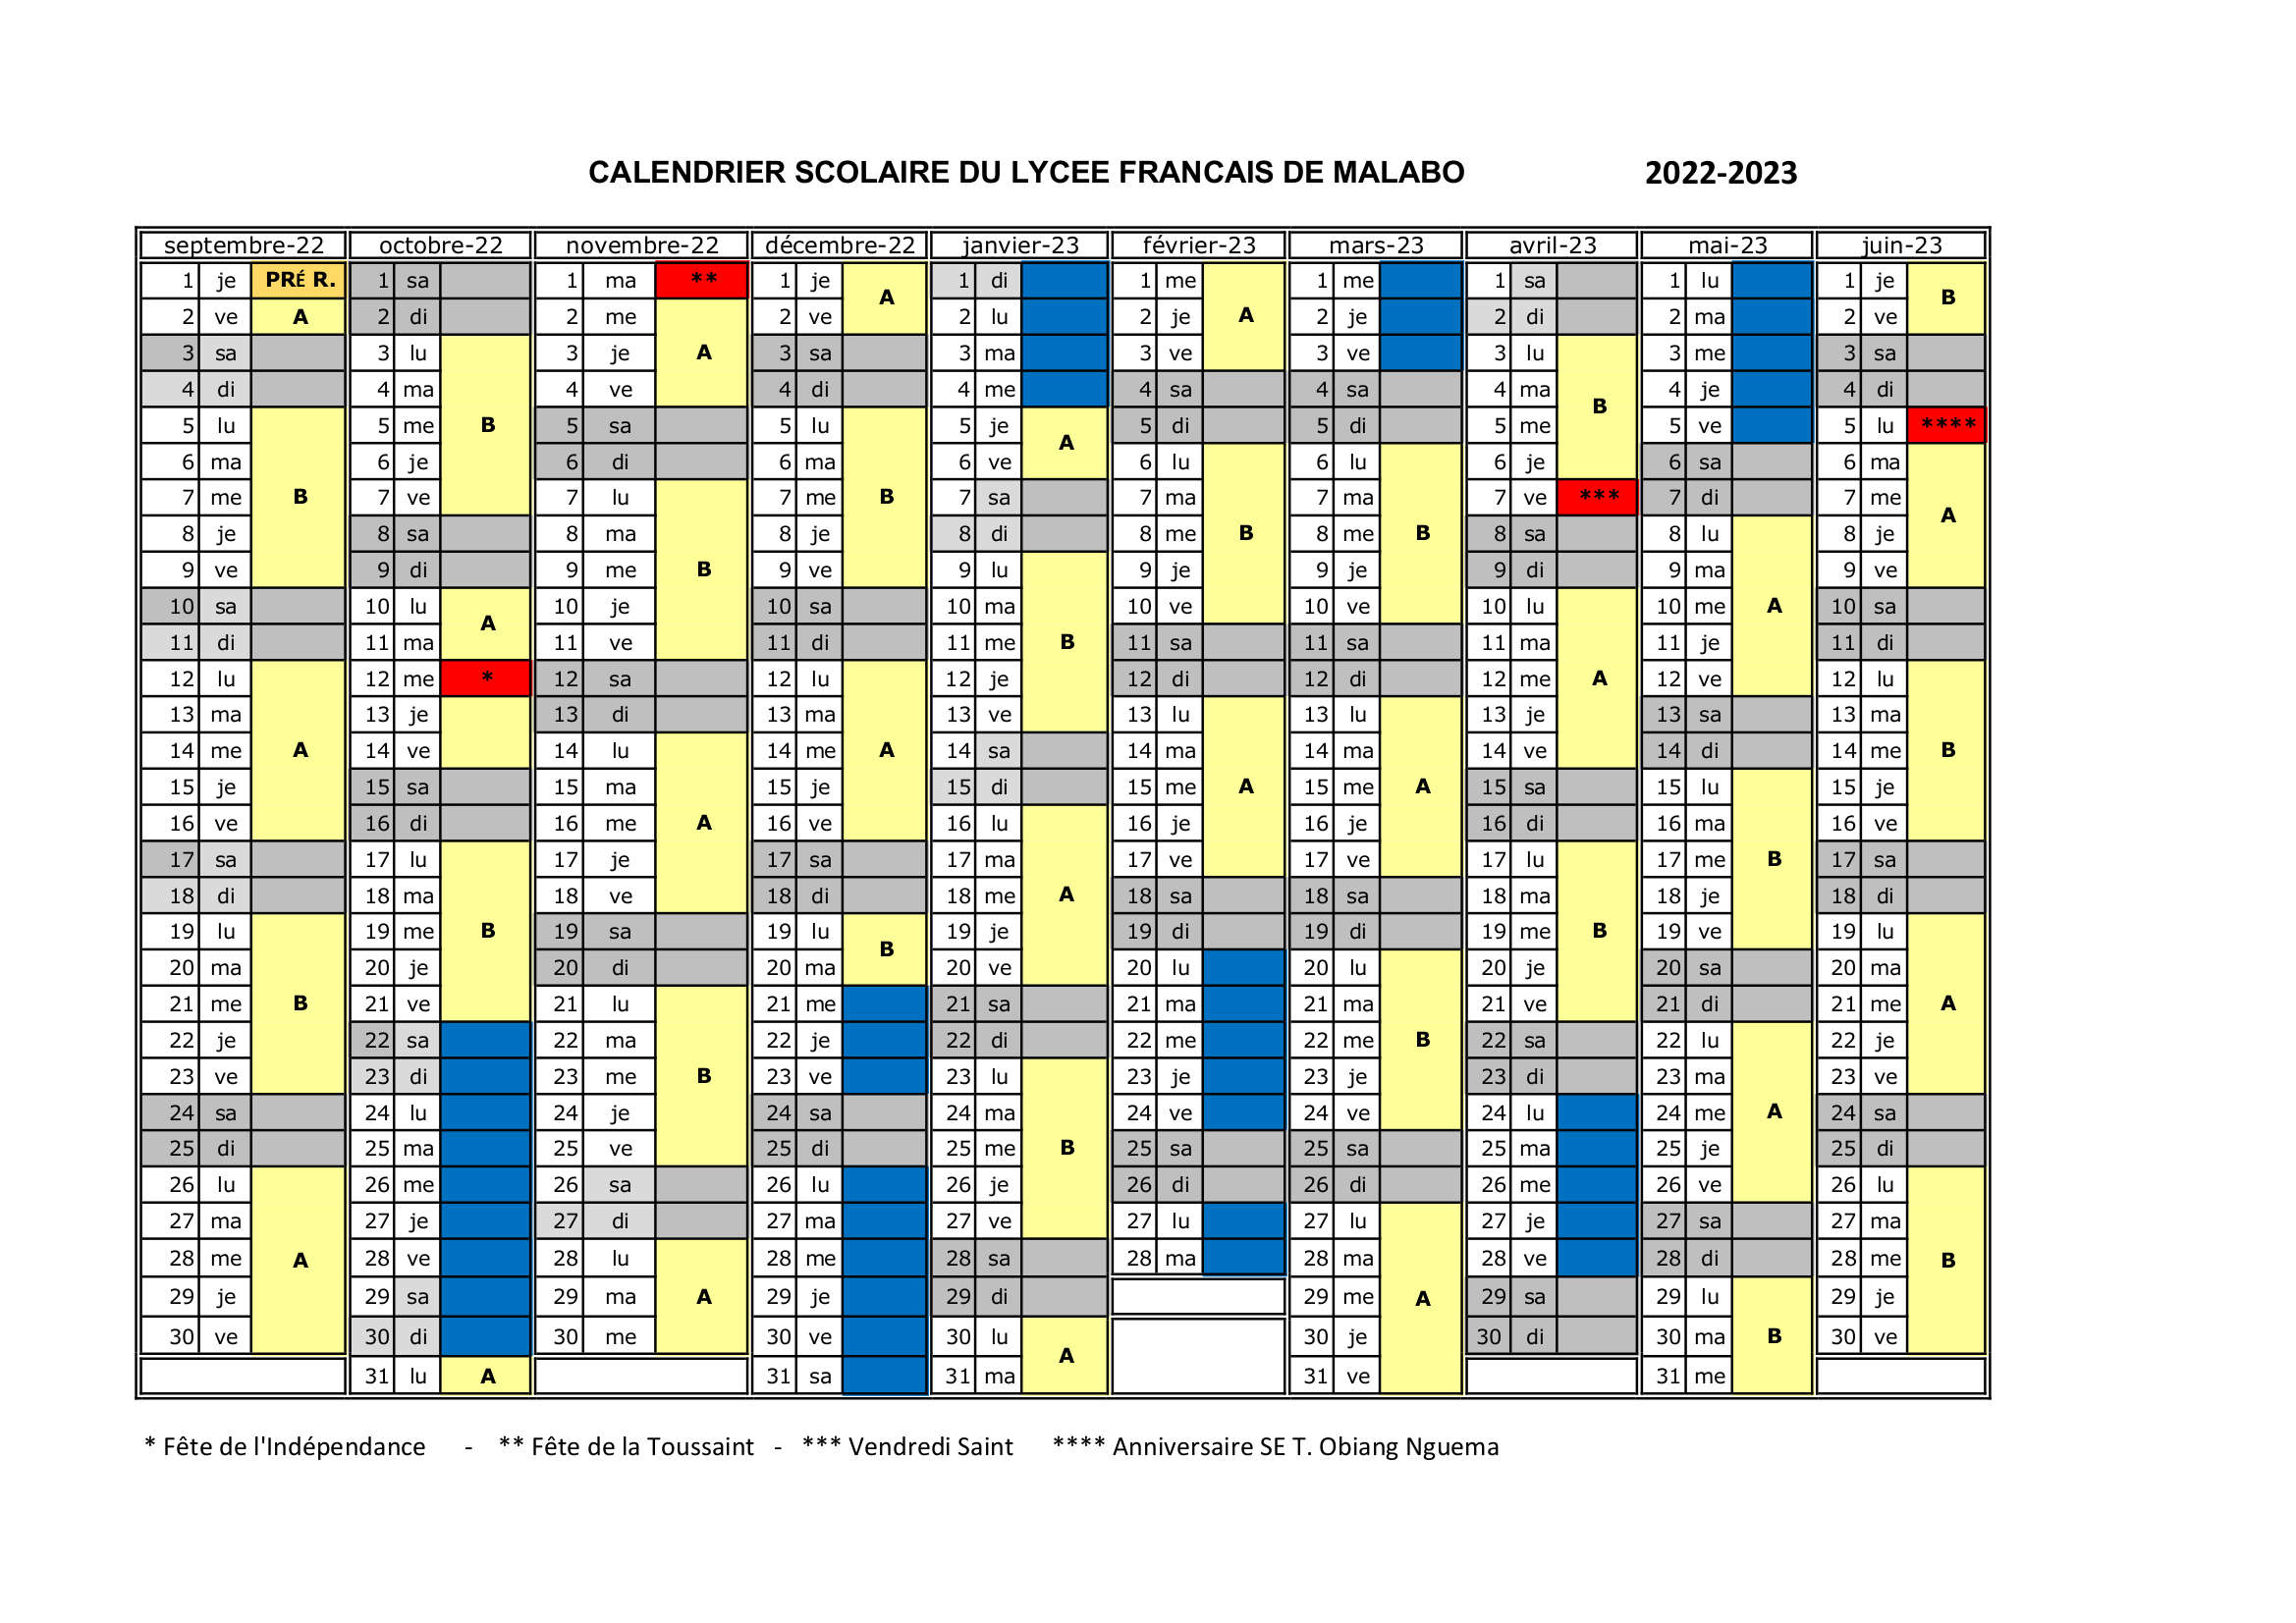 Malabo calendrier 2022 2023